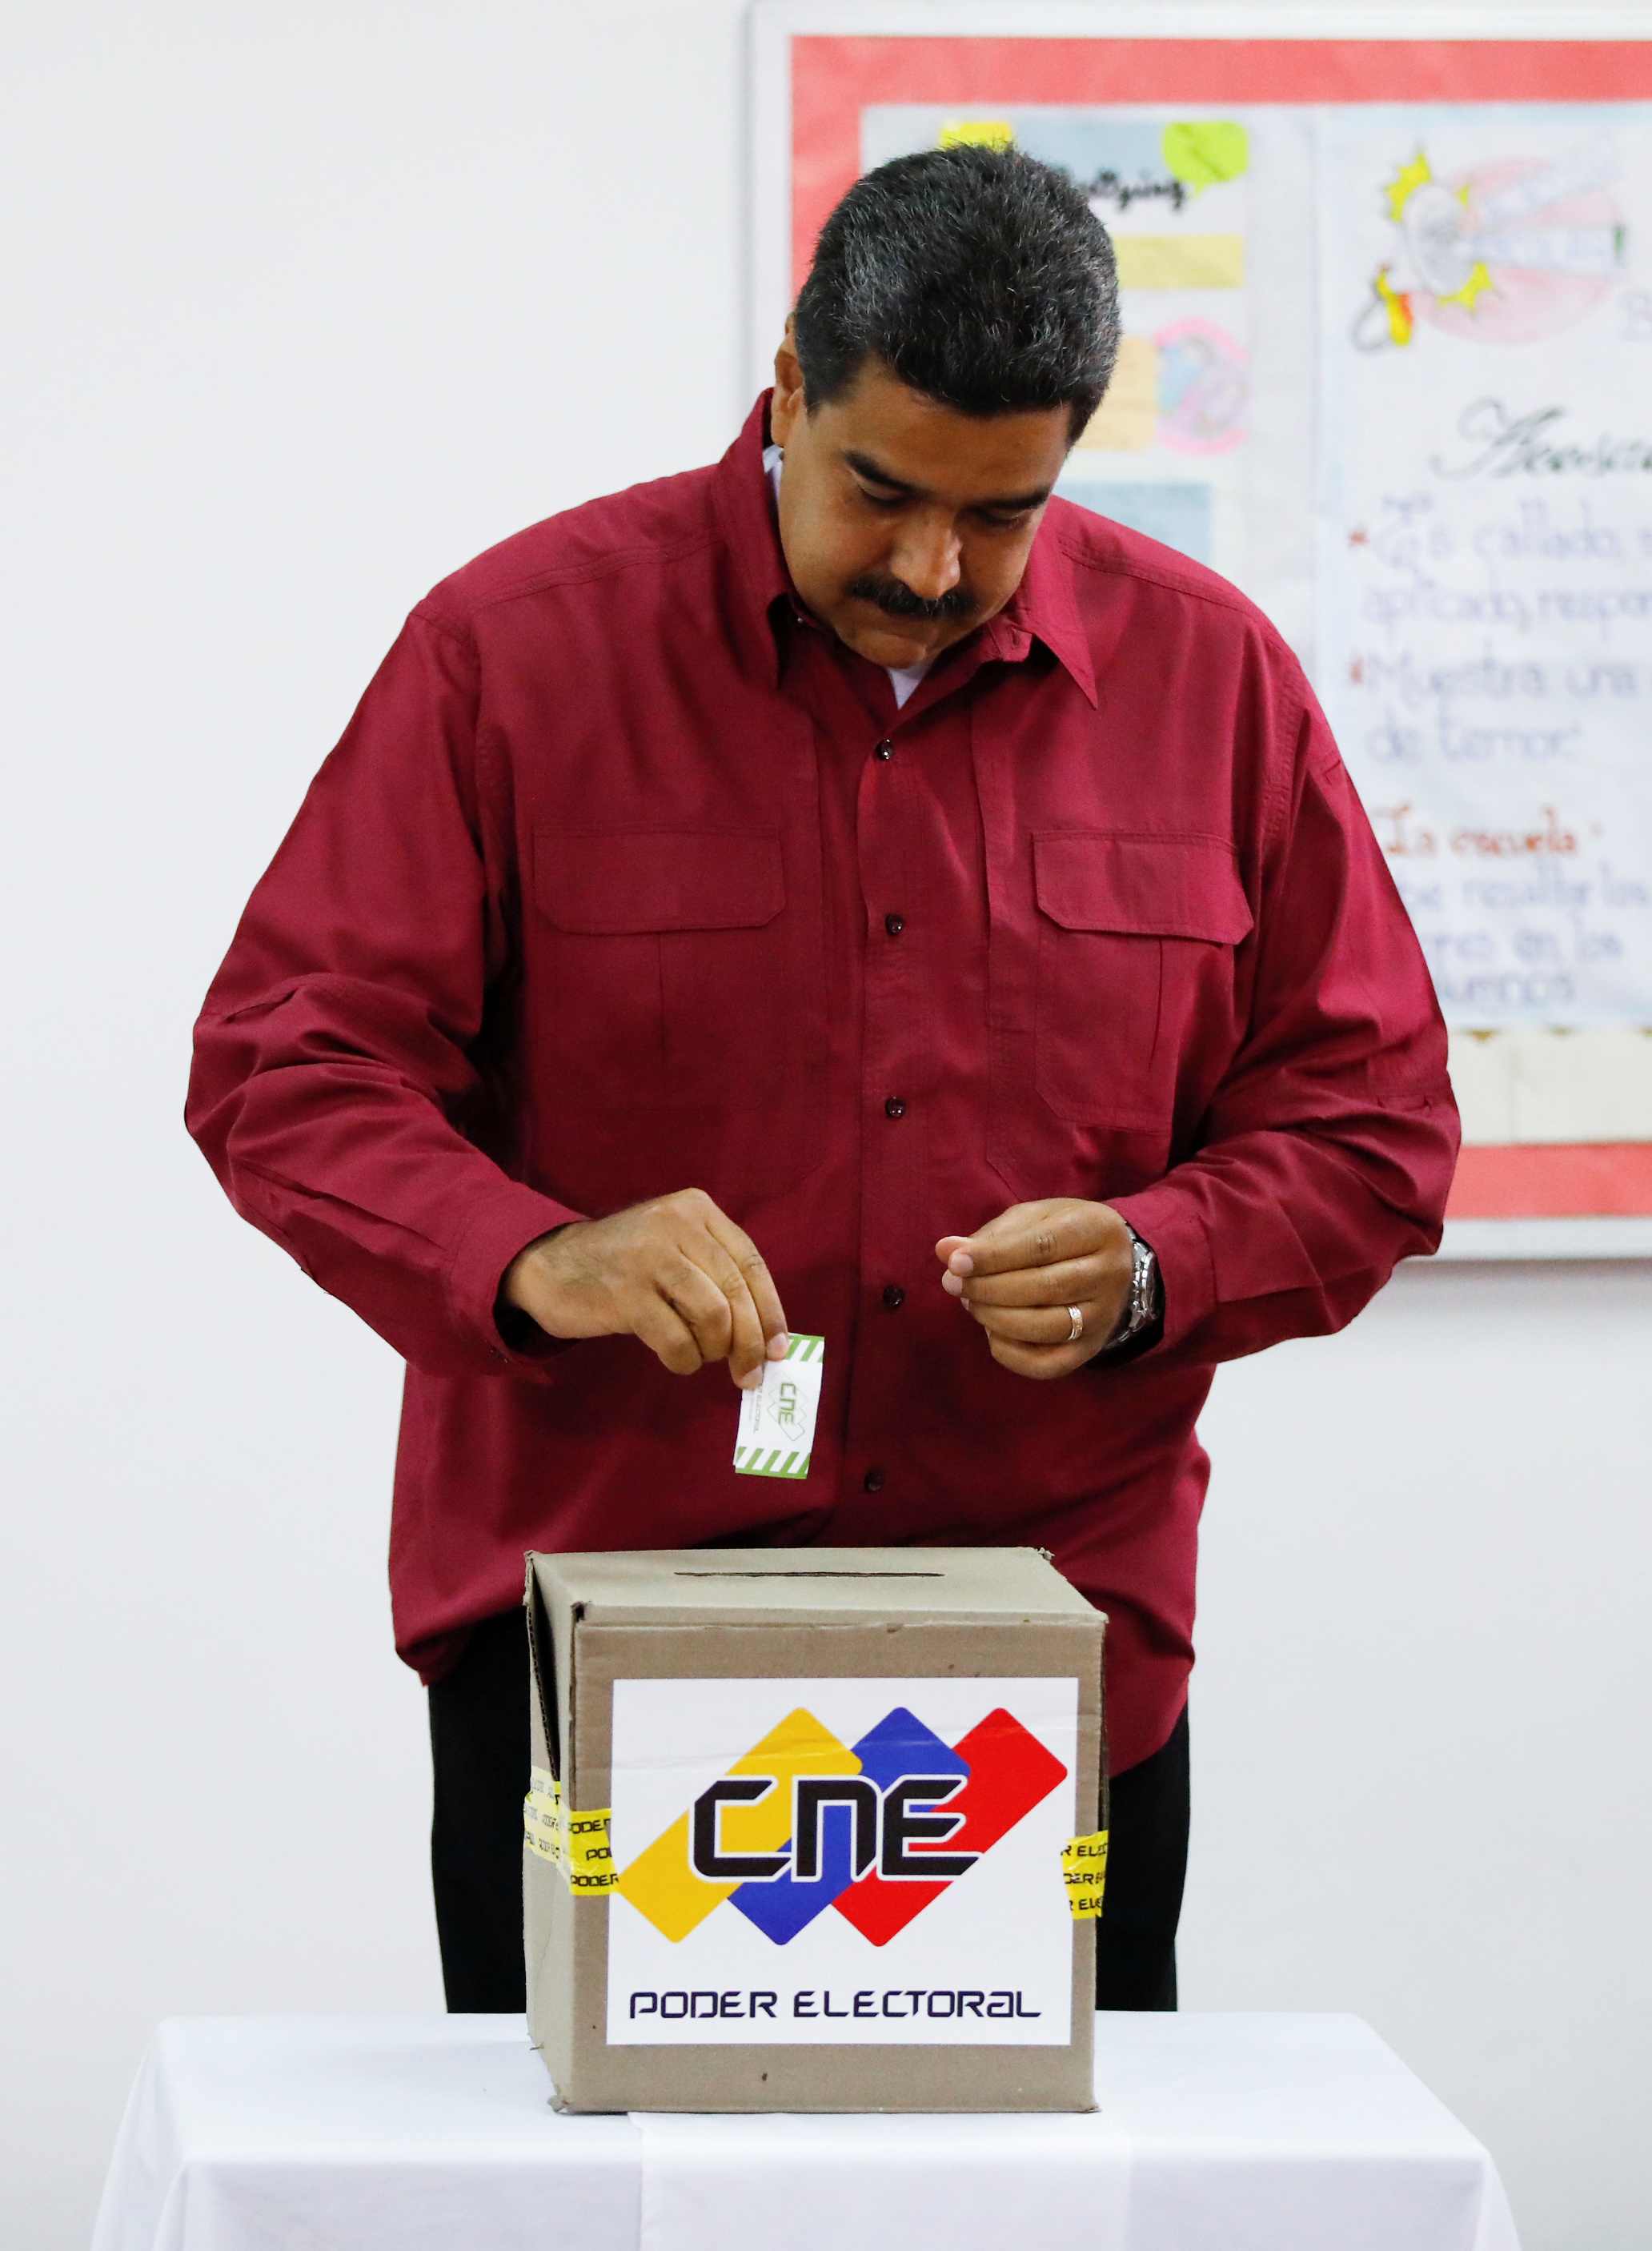 رئيس فنزويلا يدلى بصوته فى انتخابات الرئاسة